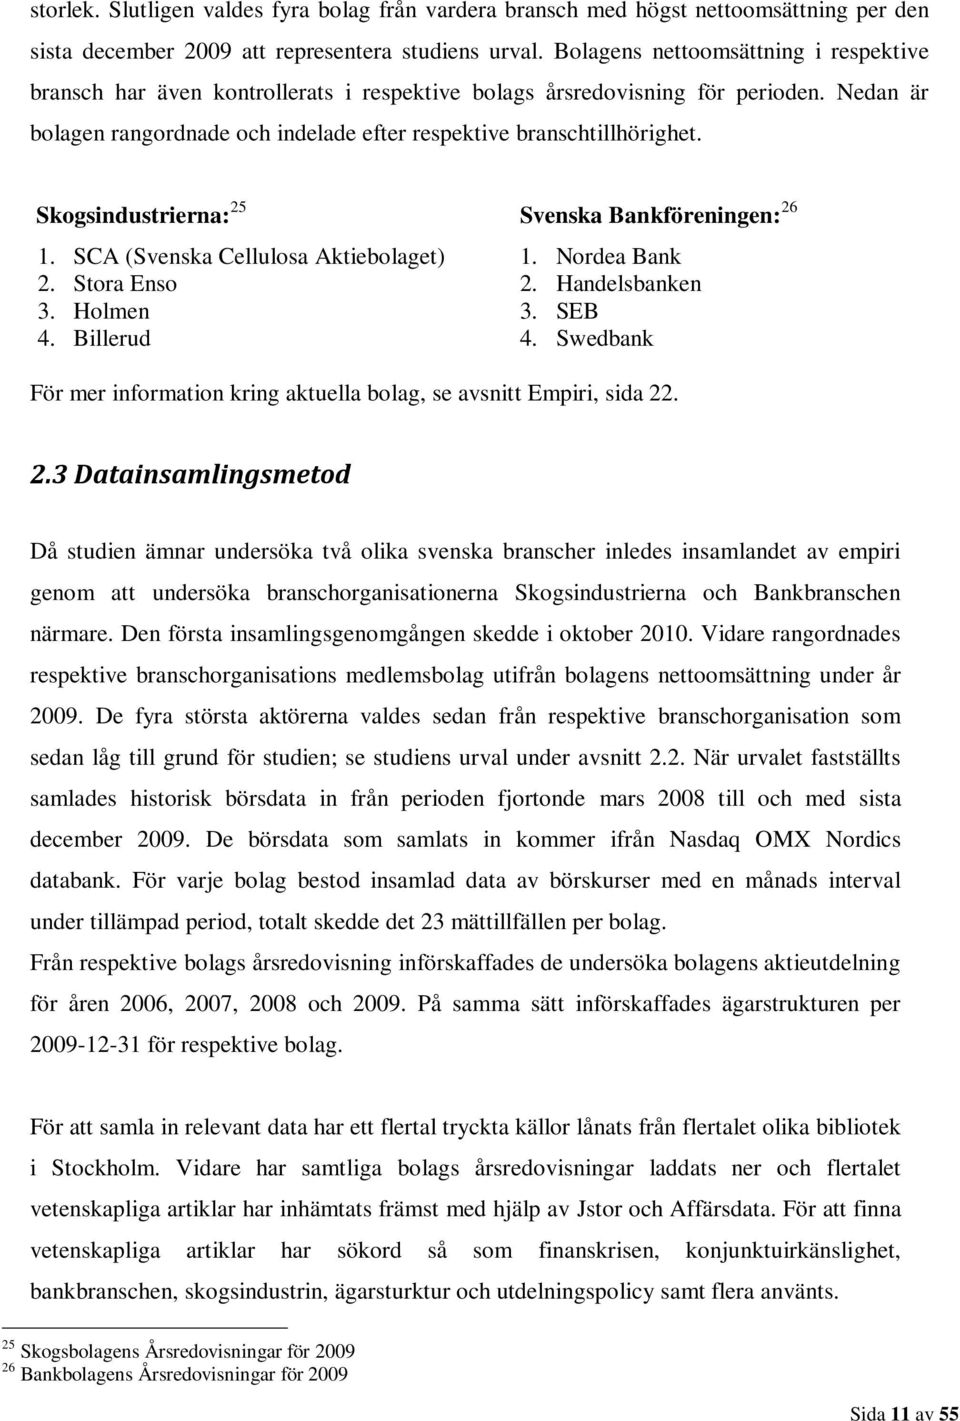 Skogsindustrierna: 25 Svenska Bankföreningen: 26 1. SCA (Svenska Cellulosa Aktiebolaget) 1. Nordea Bank 2. Stora Enso 2. Handelsbanken 3. Holmen 3. SEB 4. Billerud 4.